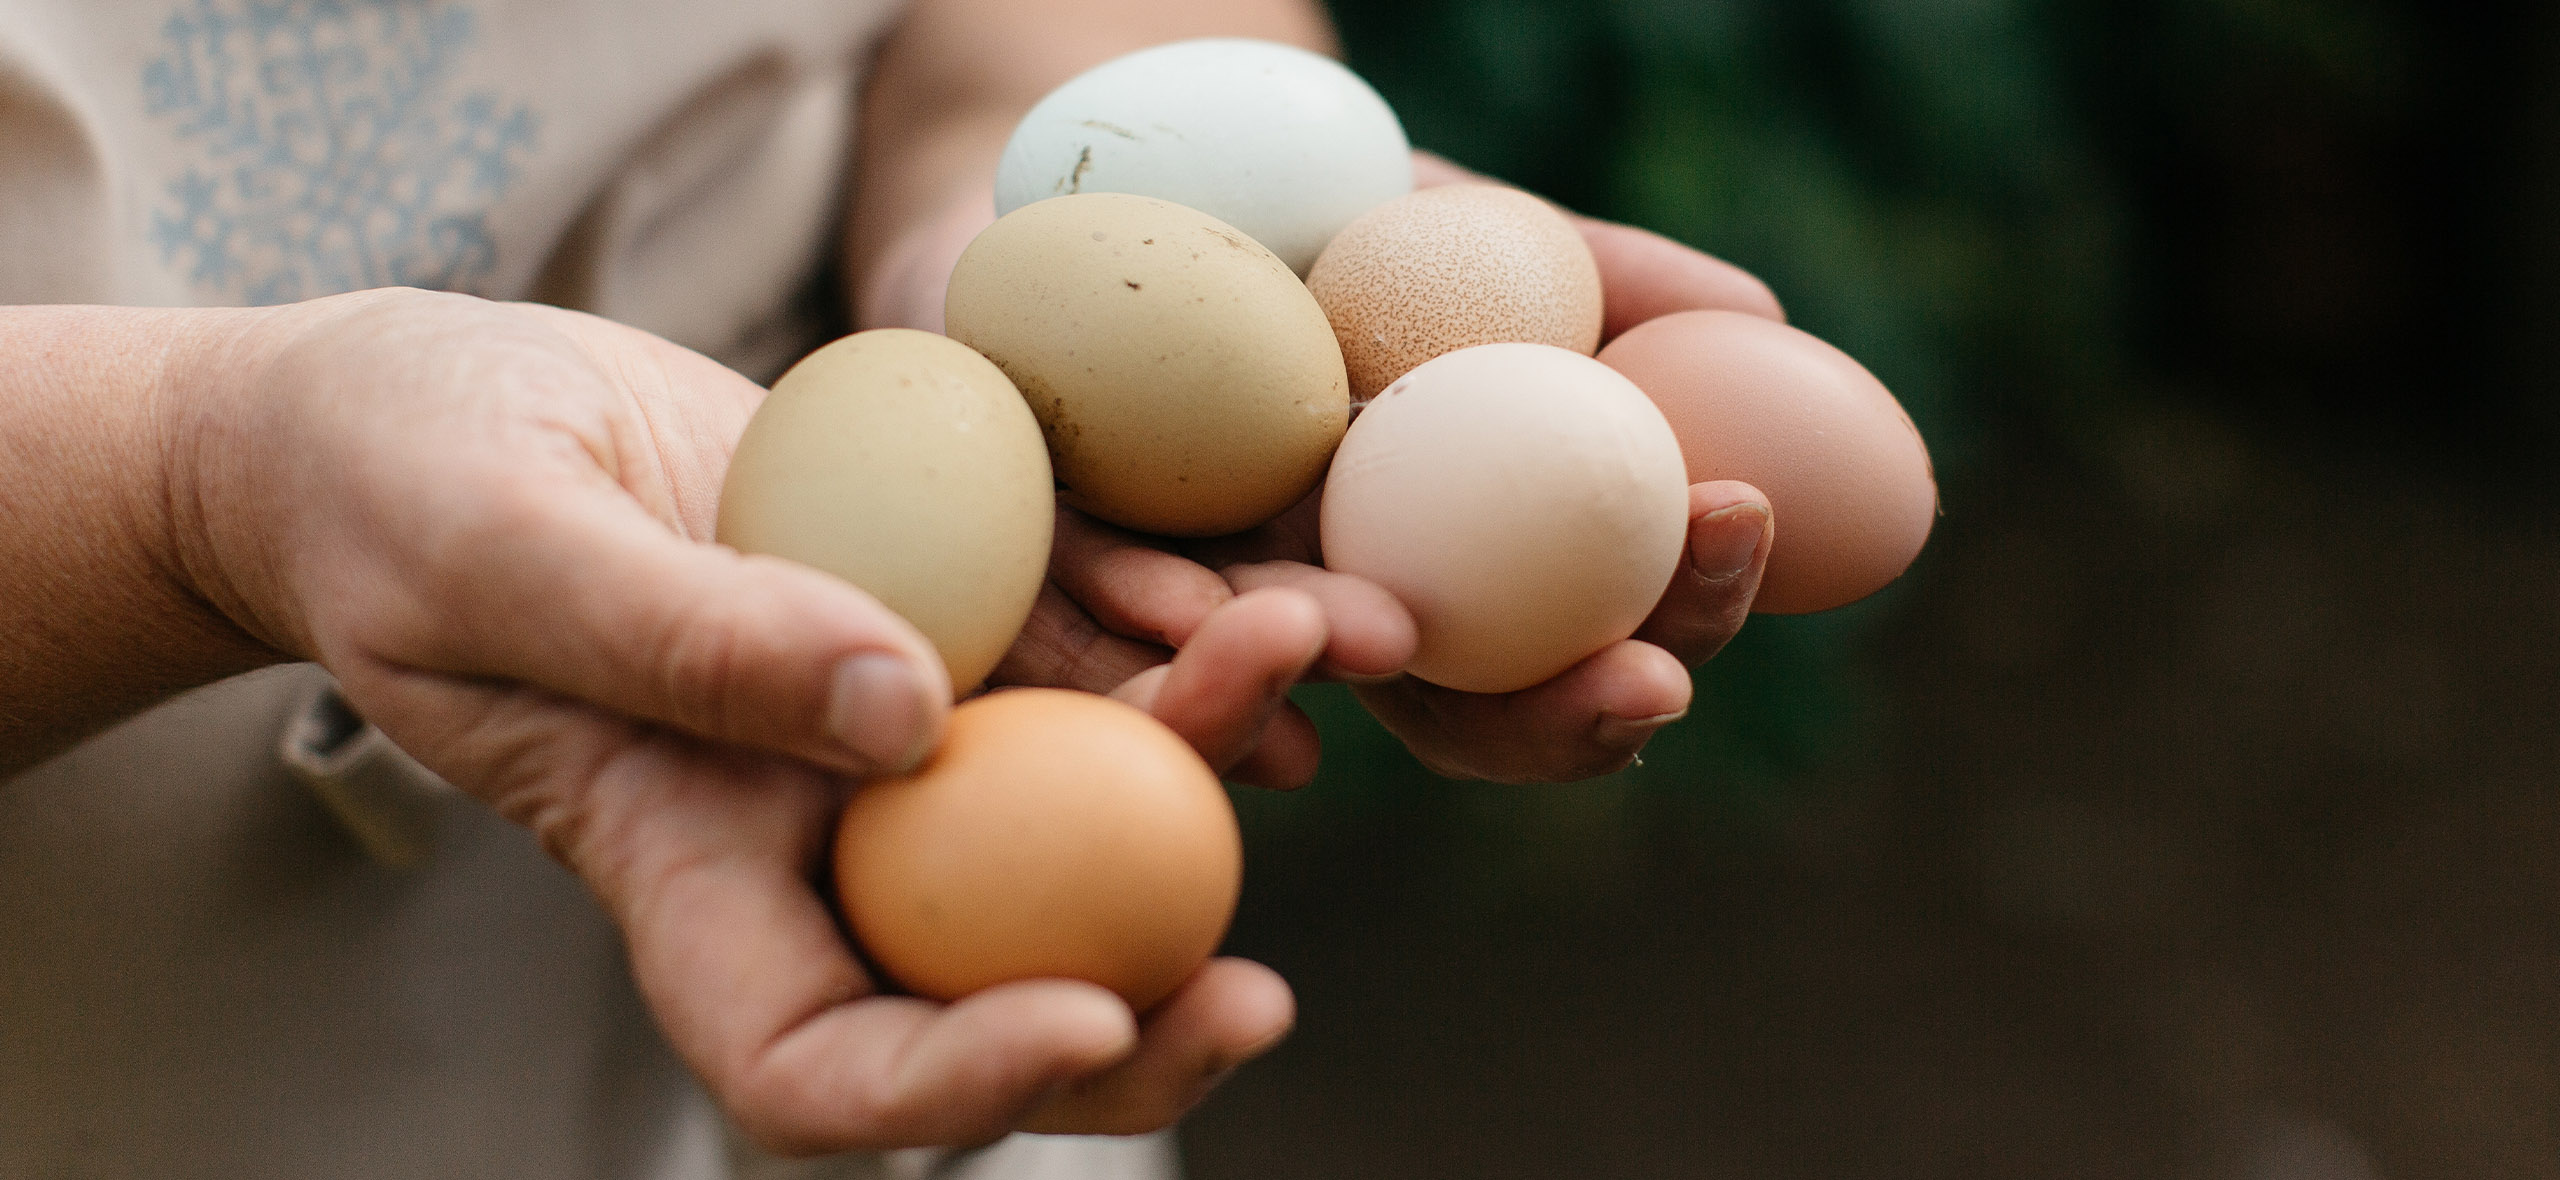 «Коричневые полезнее белых» и еще 6 мифов о яйцах